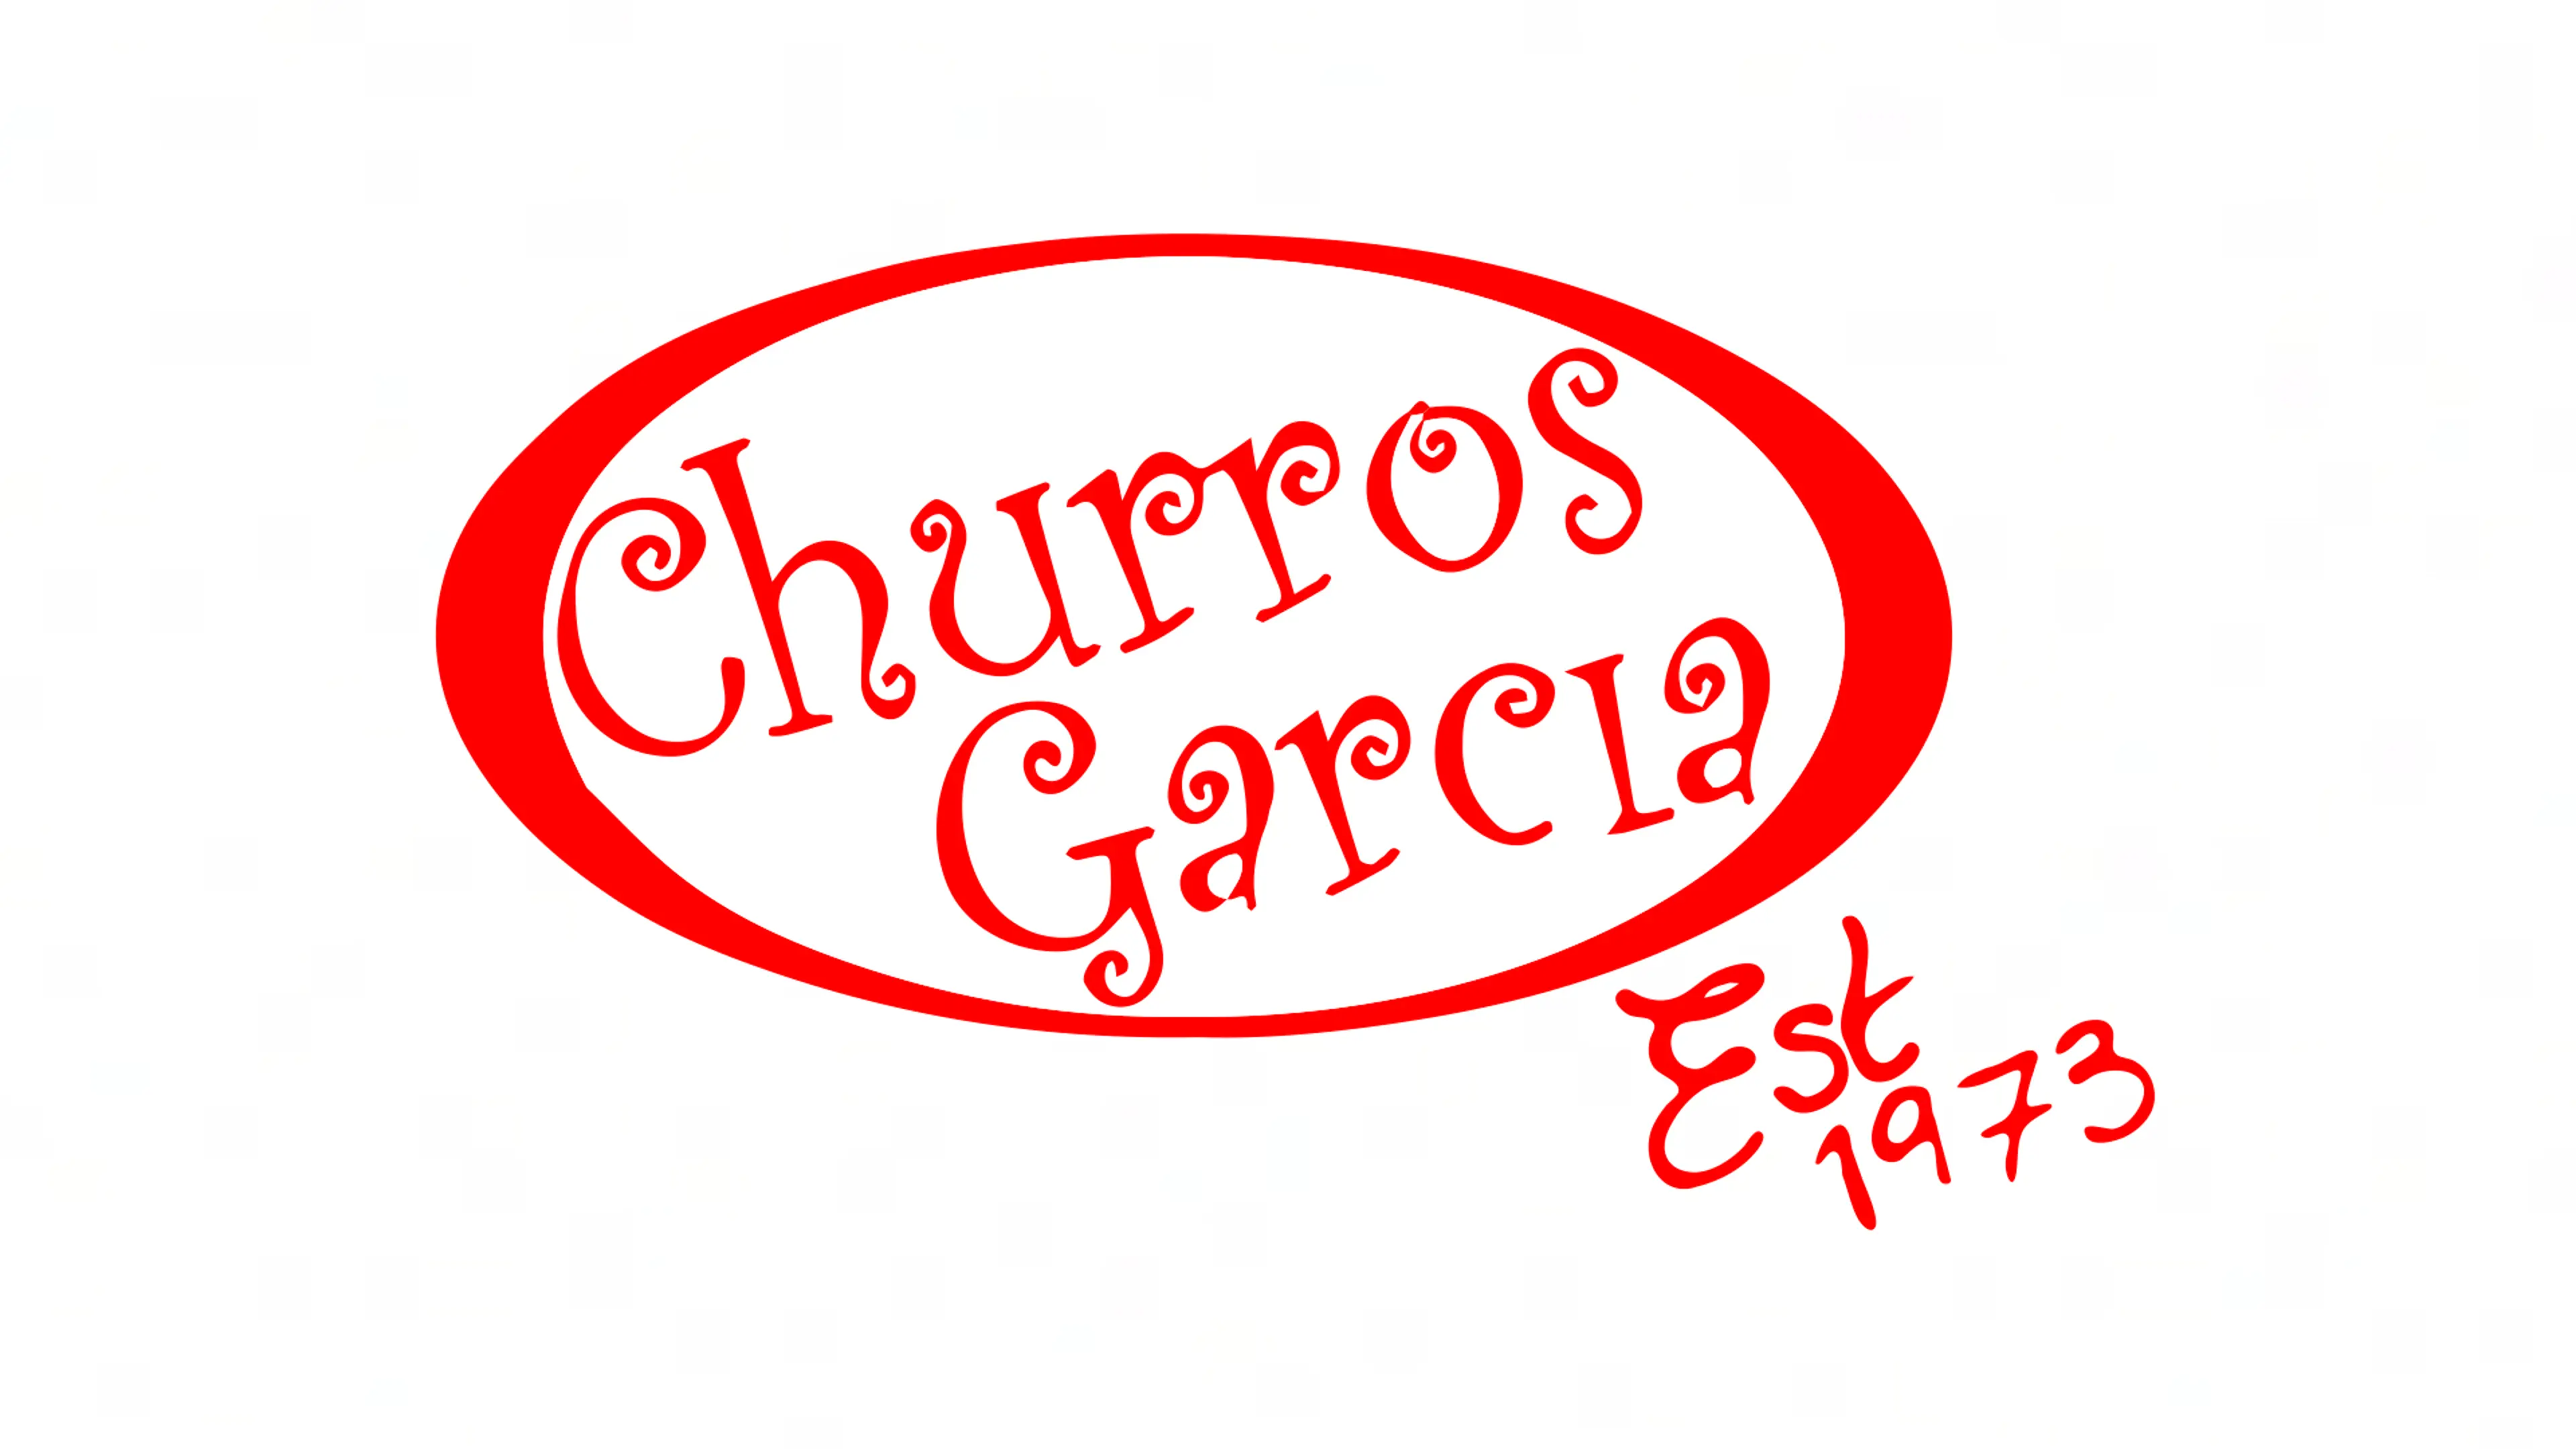 Churros Garcia